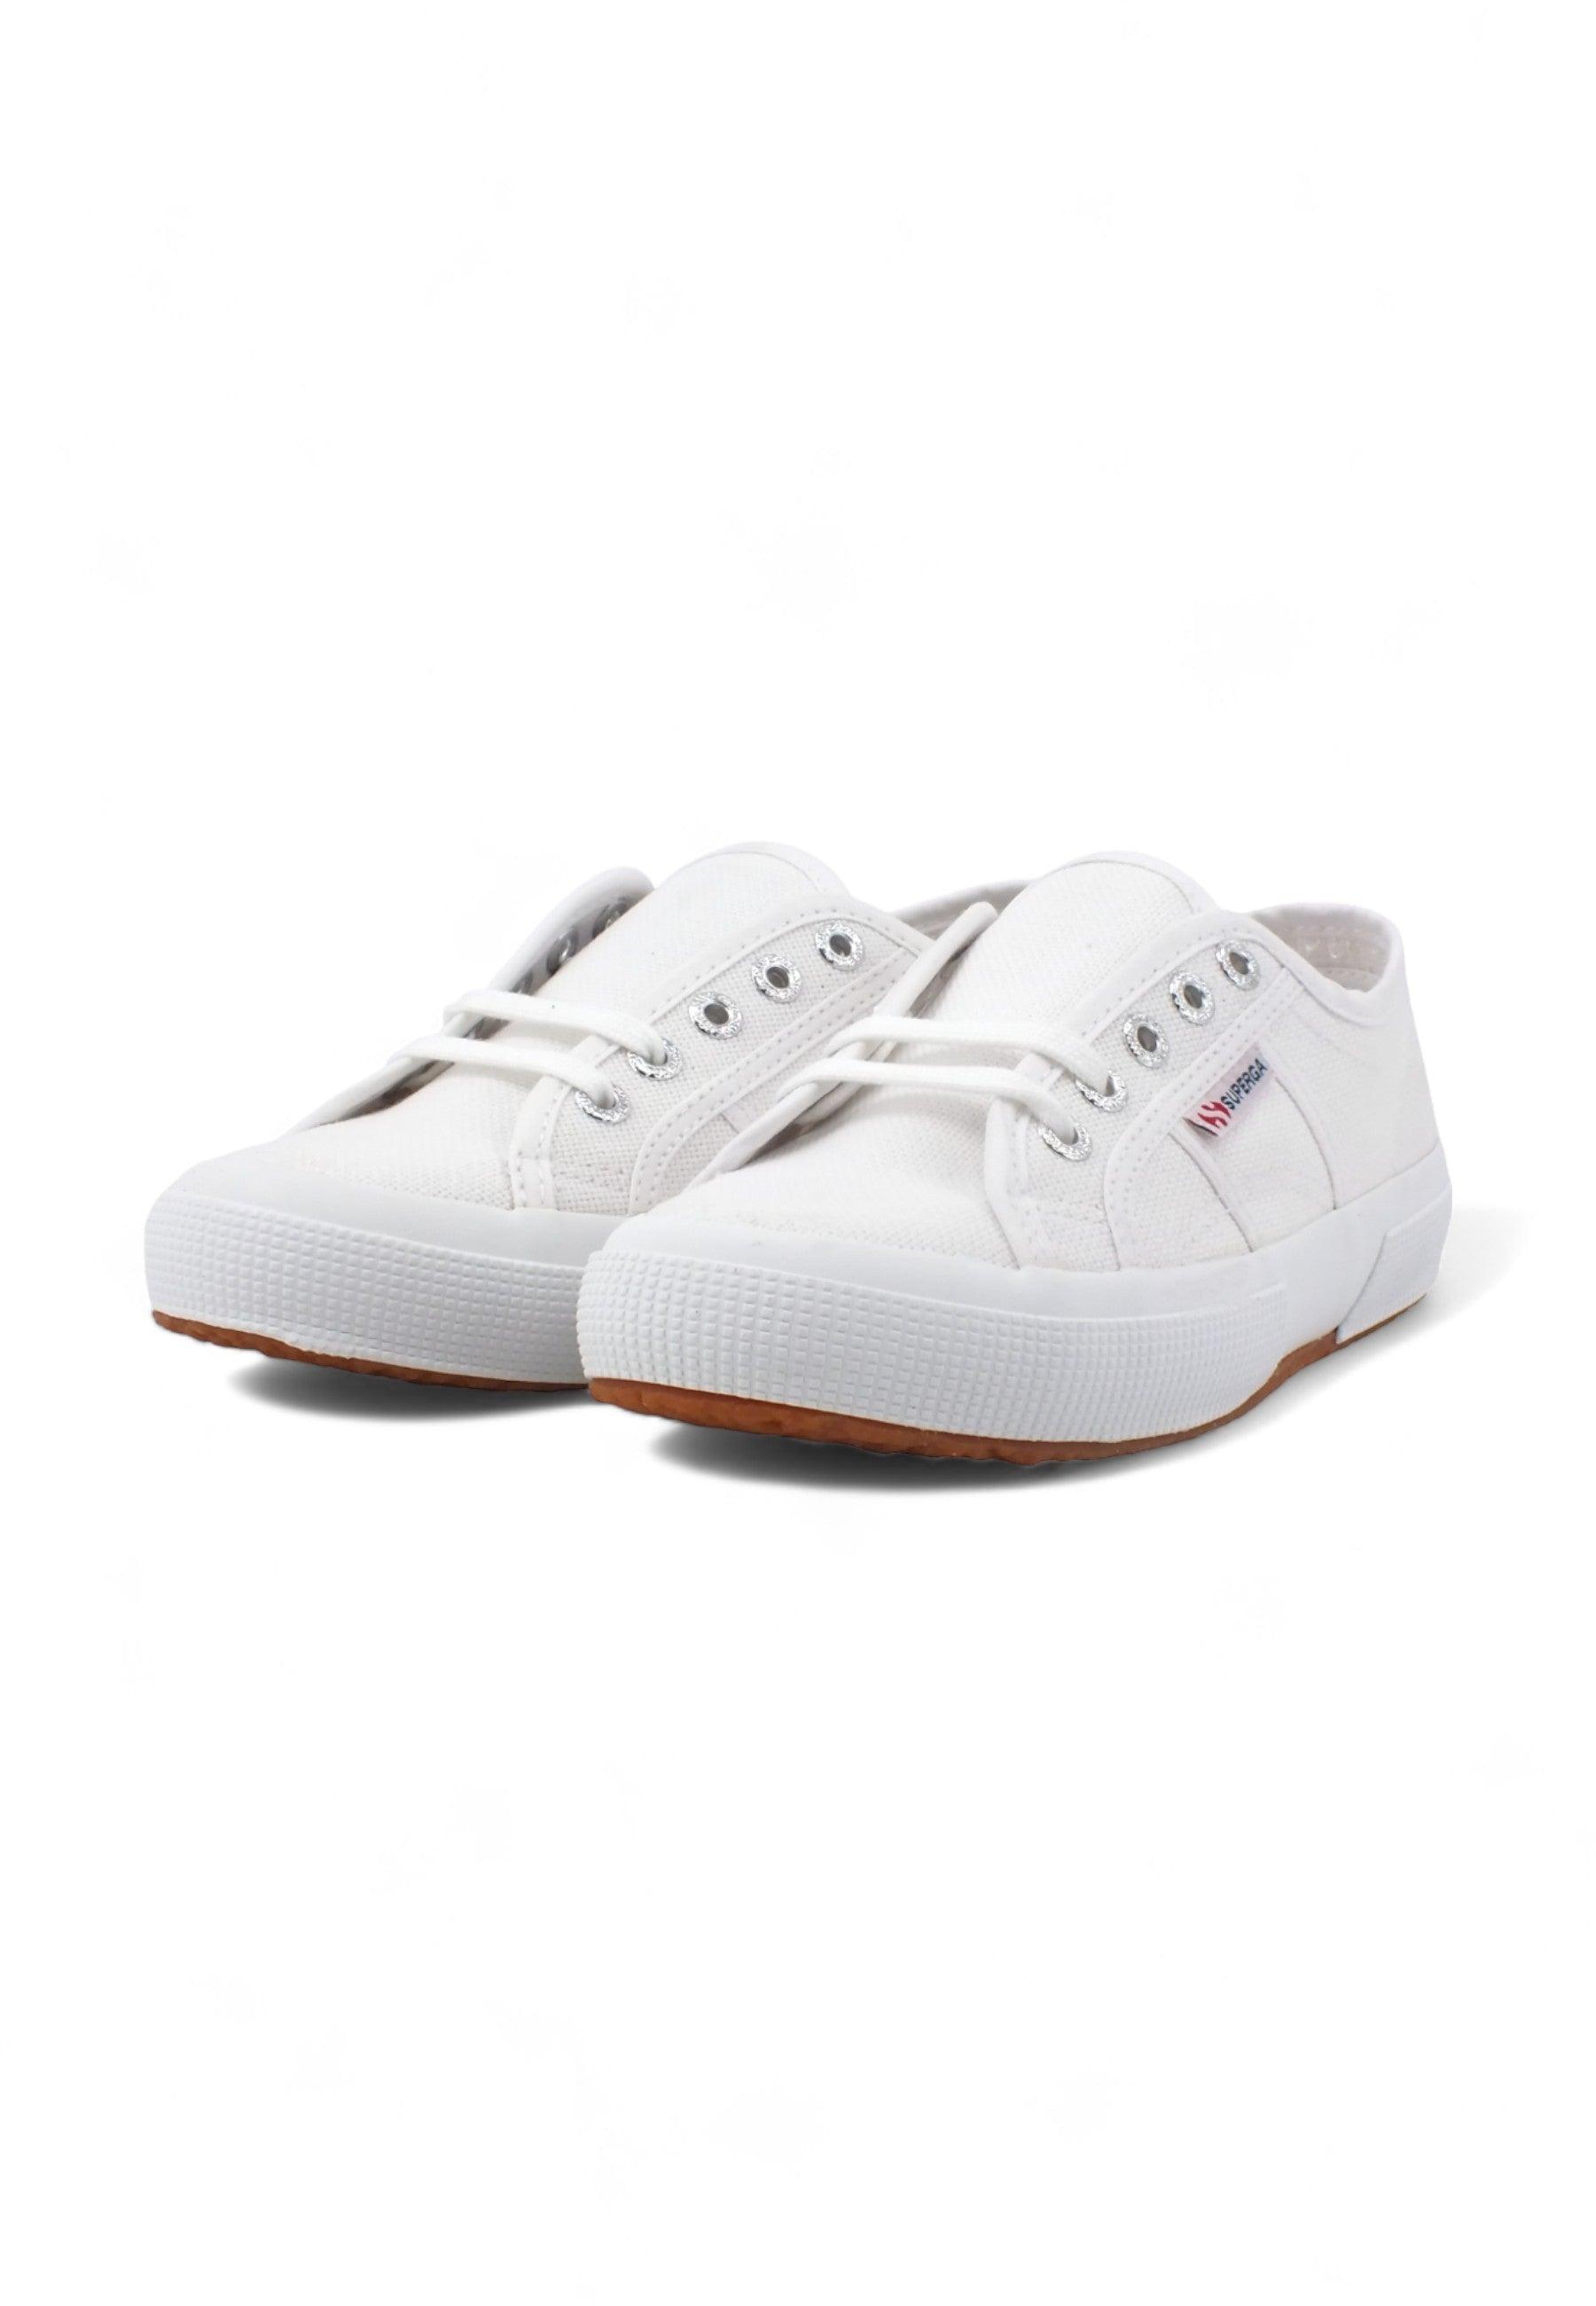 SUPERGA 2750 Cotu Classic Sneaker Donna White S000010 - Sandrini Calzature e Abbigliamento